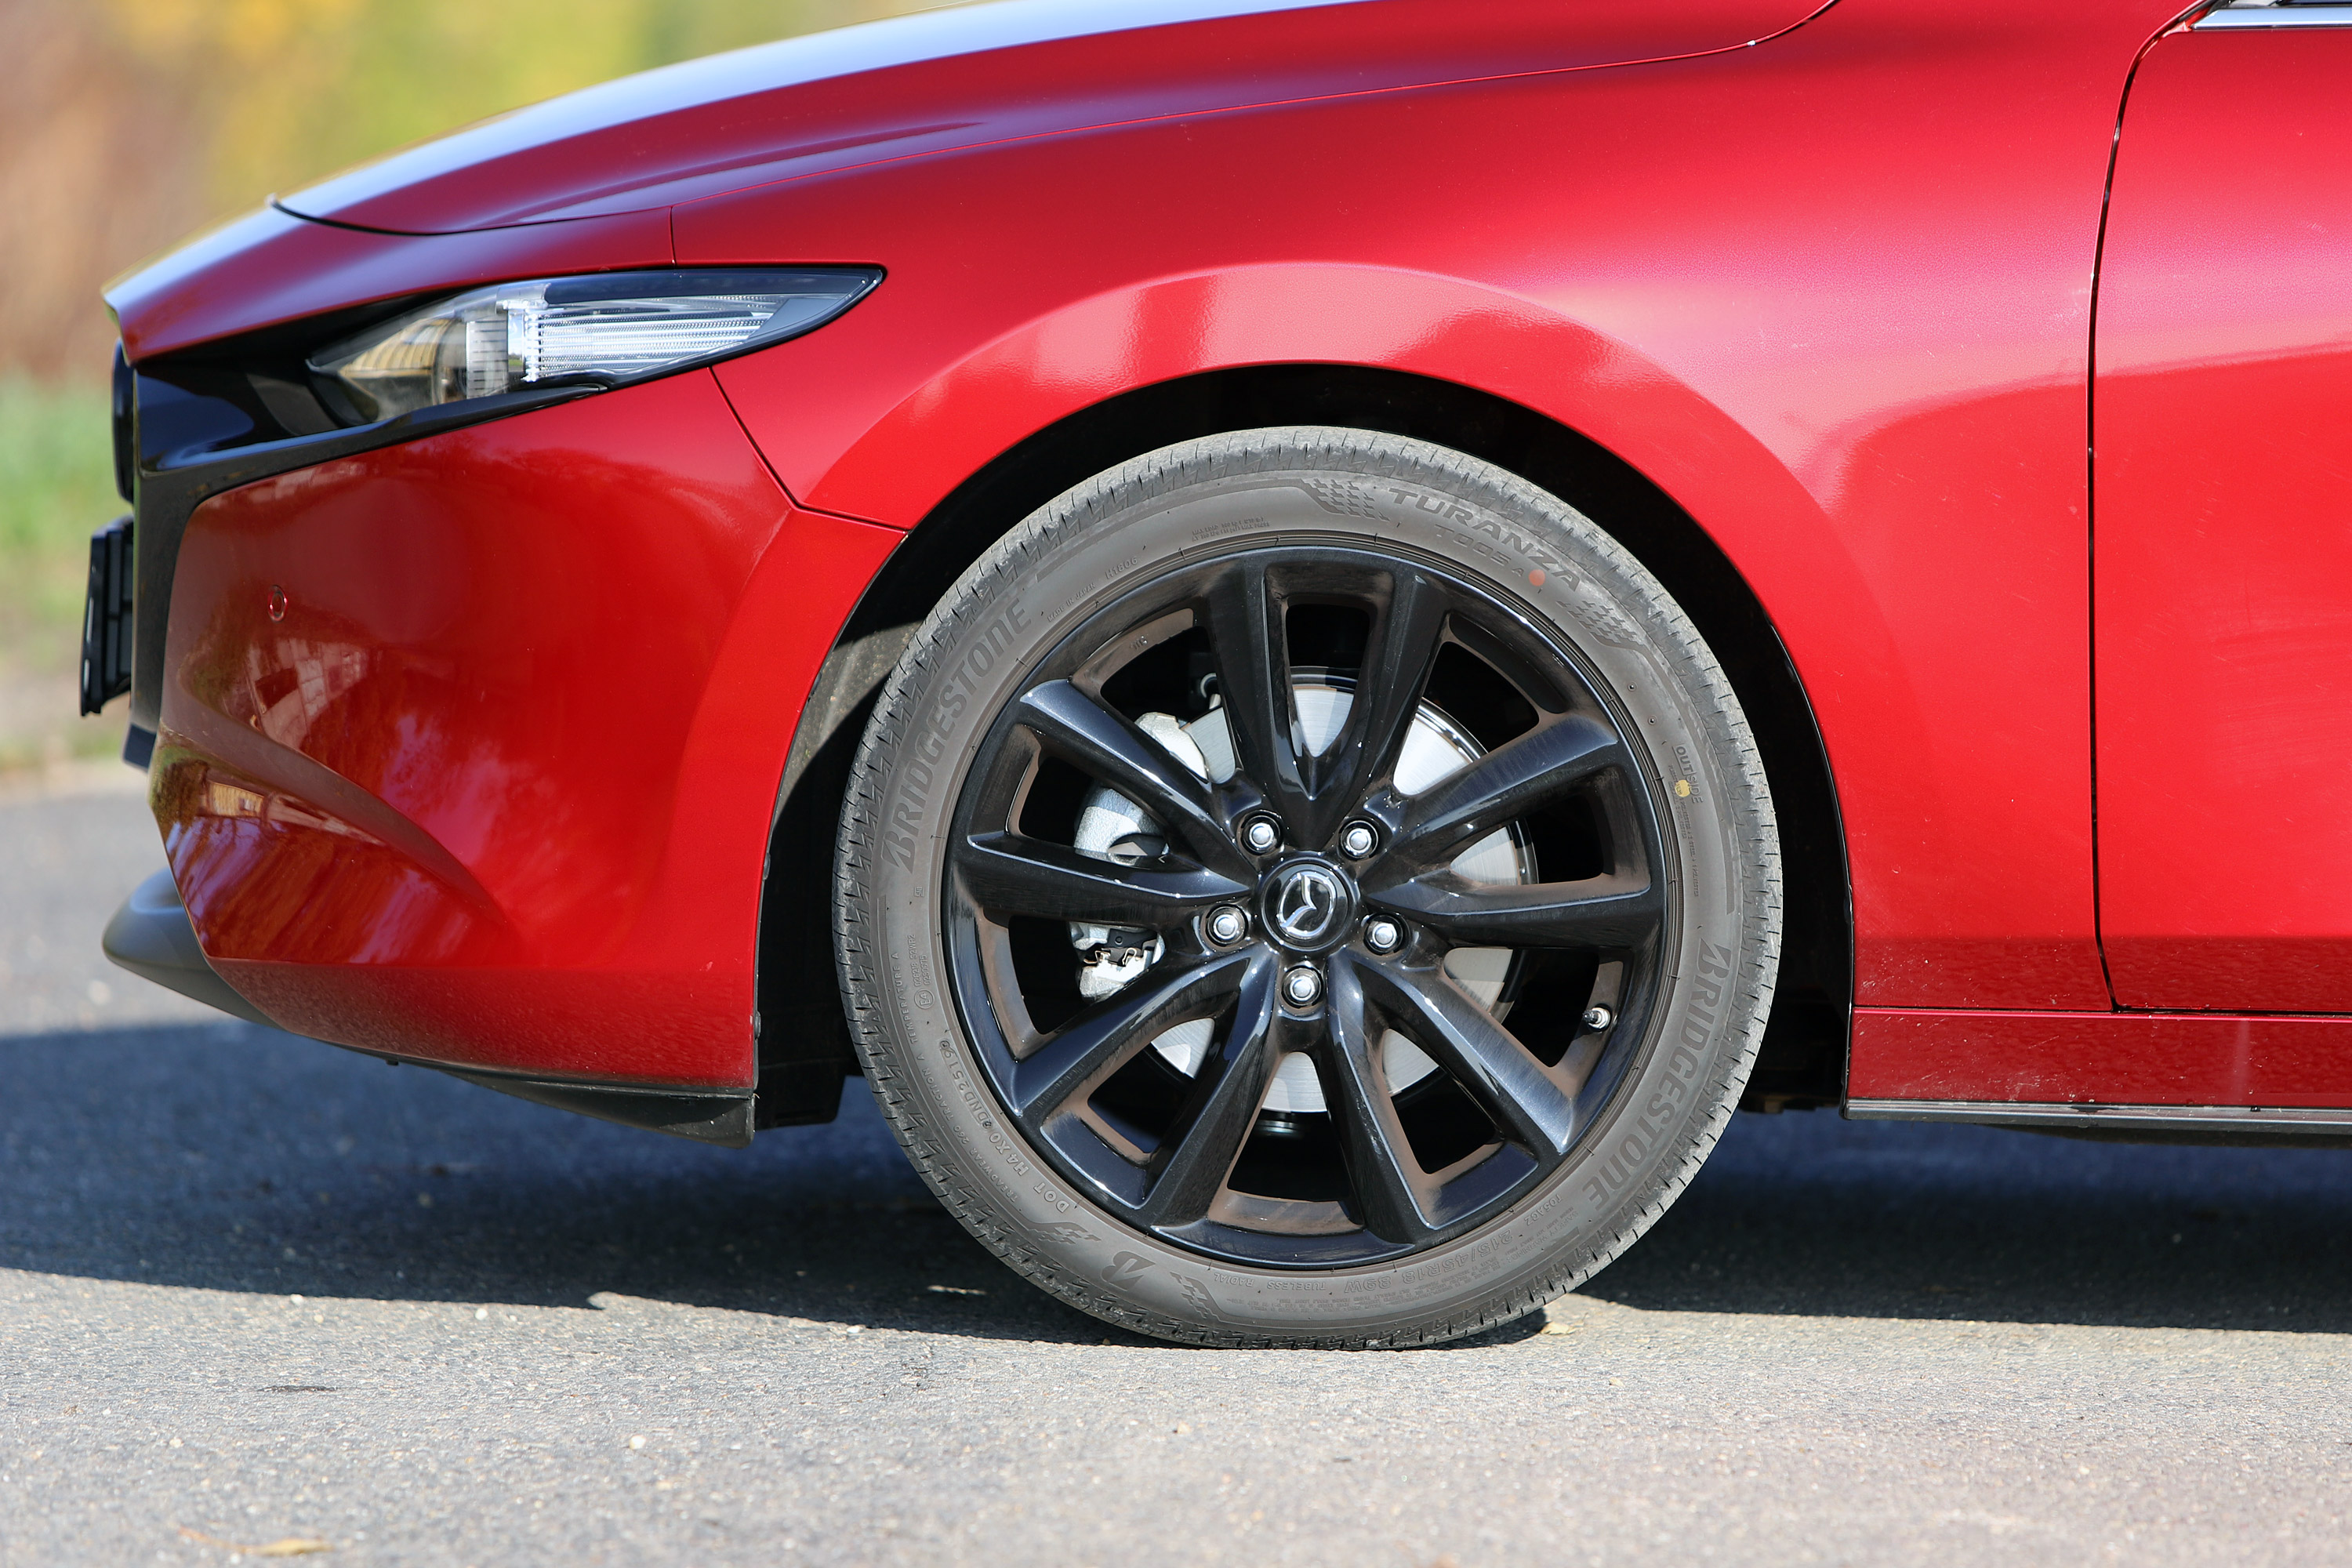 Benzinmotor, ami eddig még senkinek nem sikerült – Mazda3 Skyactiv-X teszt 9